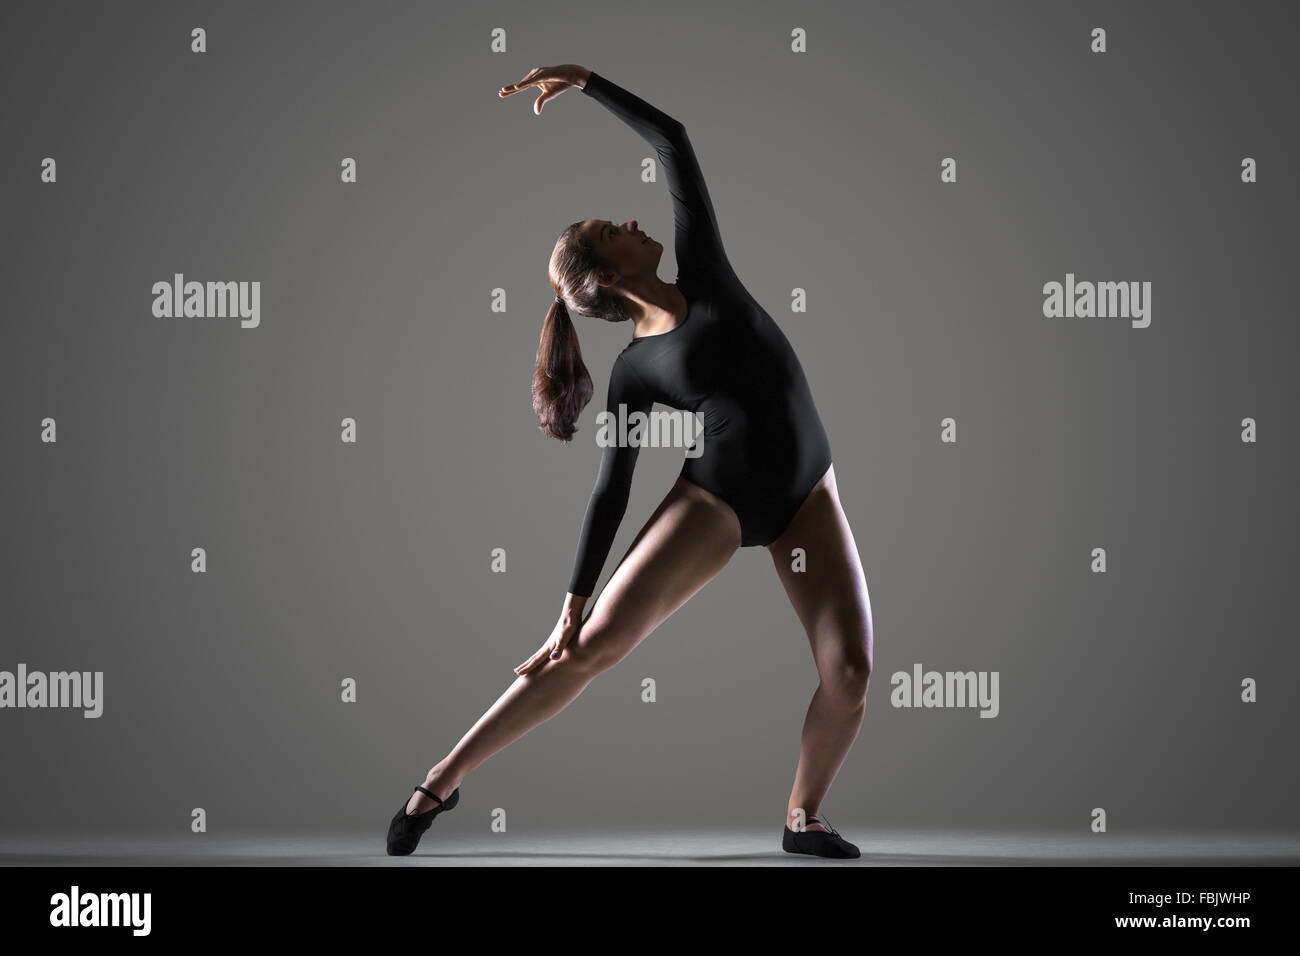 Retrato de mujer joven y bella bailarina moderna en negro leotard trabajando, bailando, longitud completa, studio, fondo oscuro Foto de stock